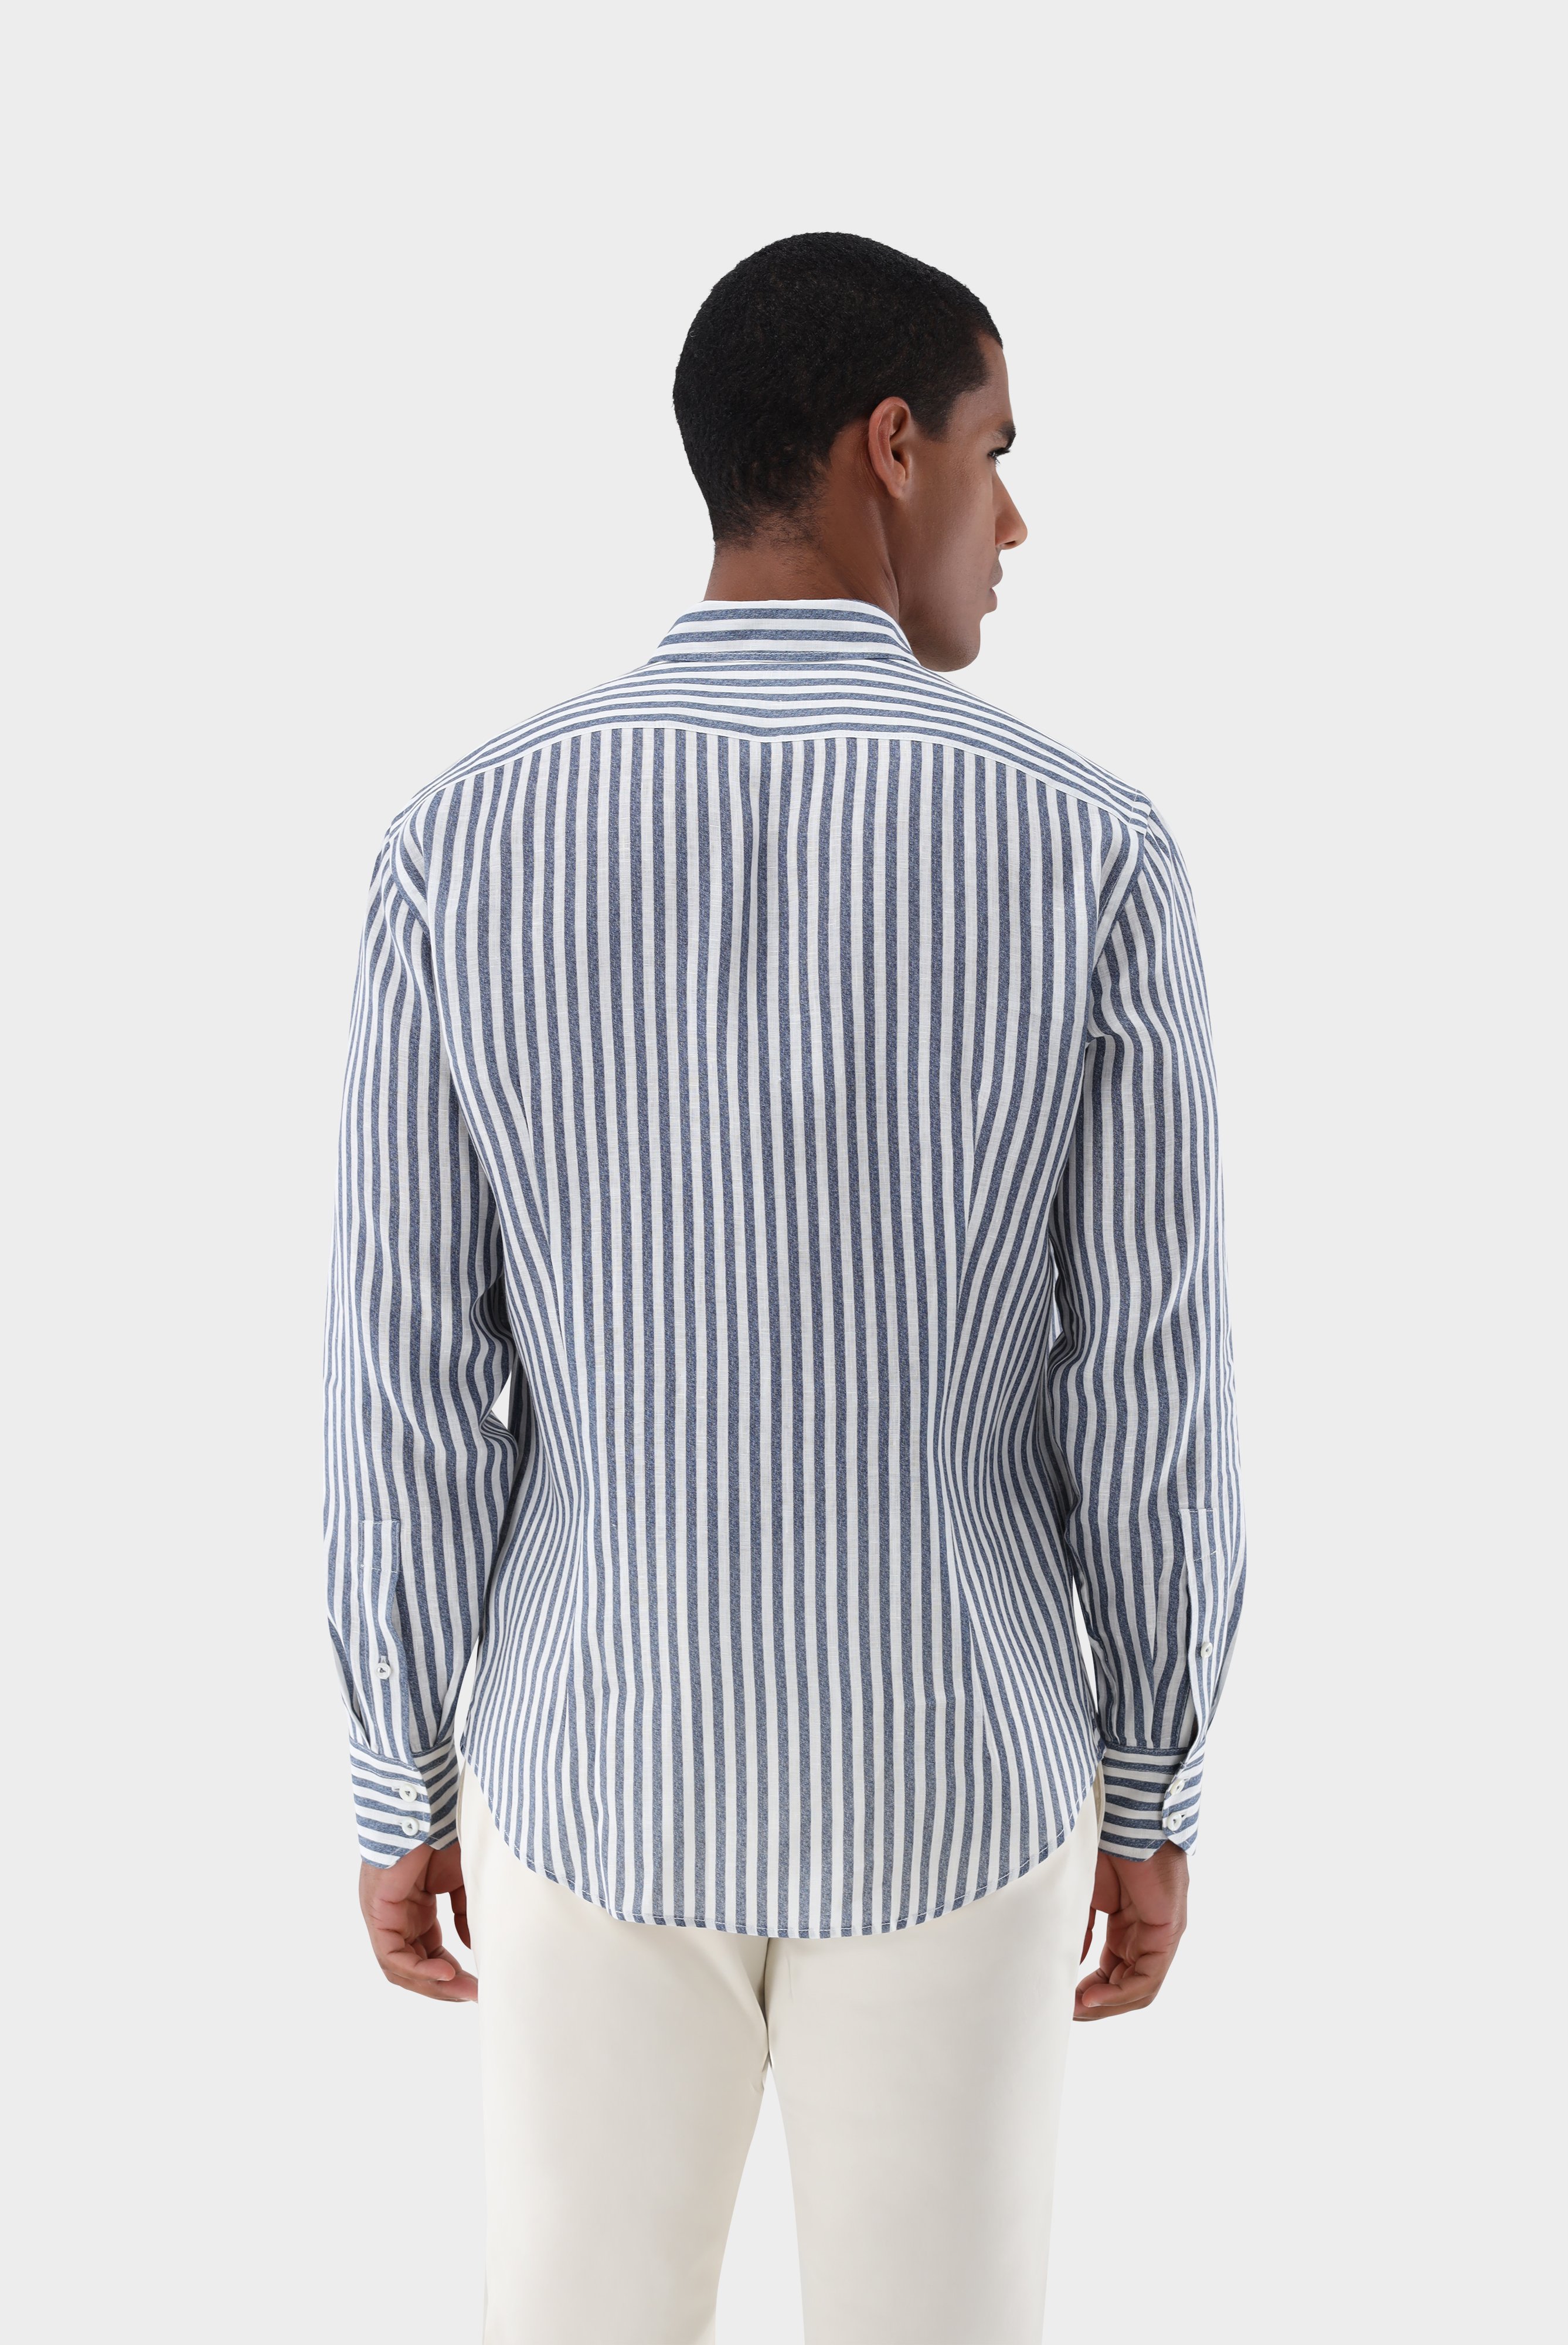 Casual Hemden+Leinenhemd mit Streifen-Druck Tailor Fit+20.2013.9V.170352.780.39